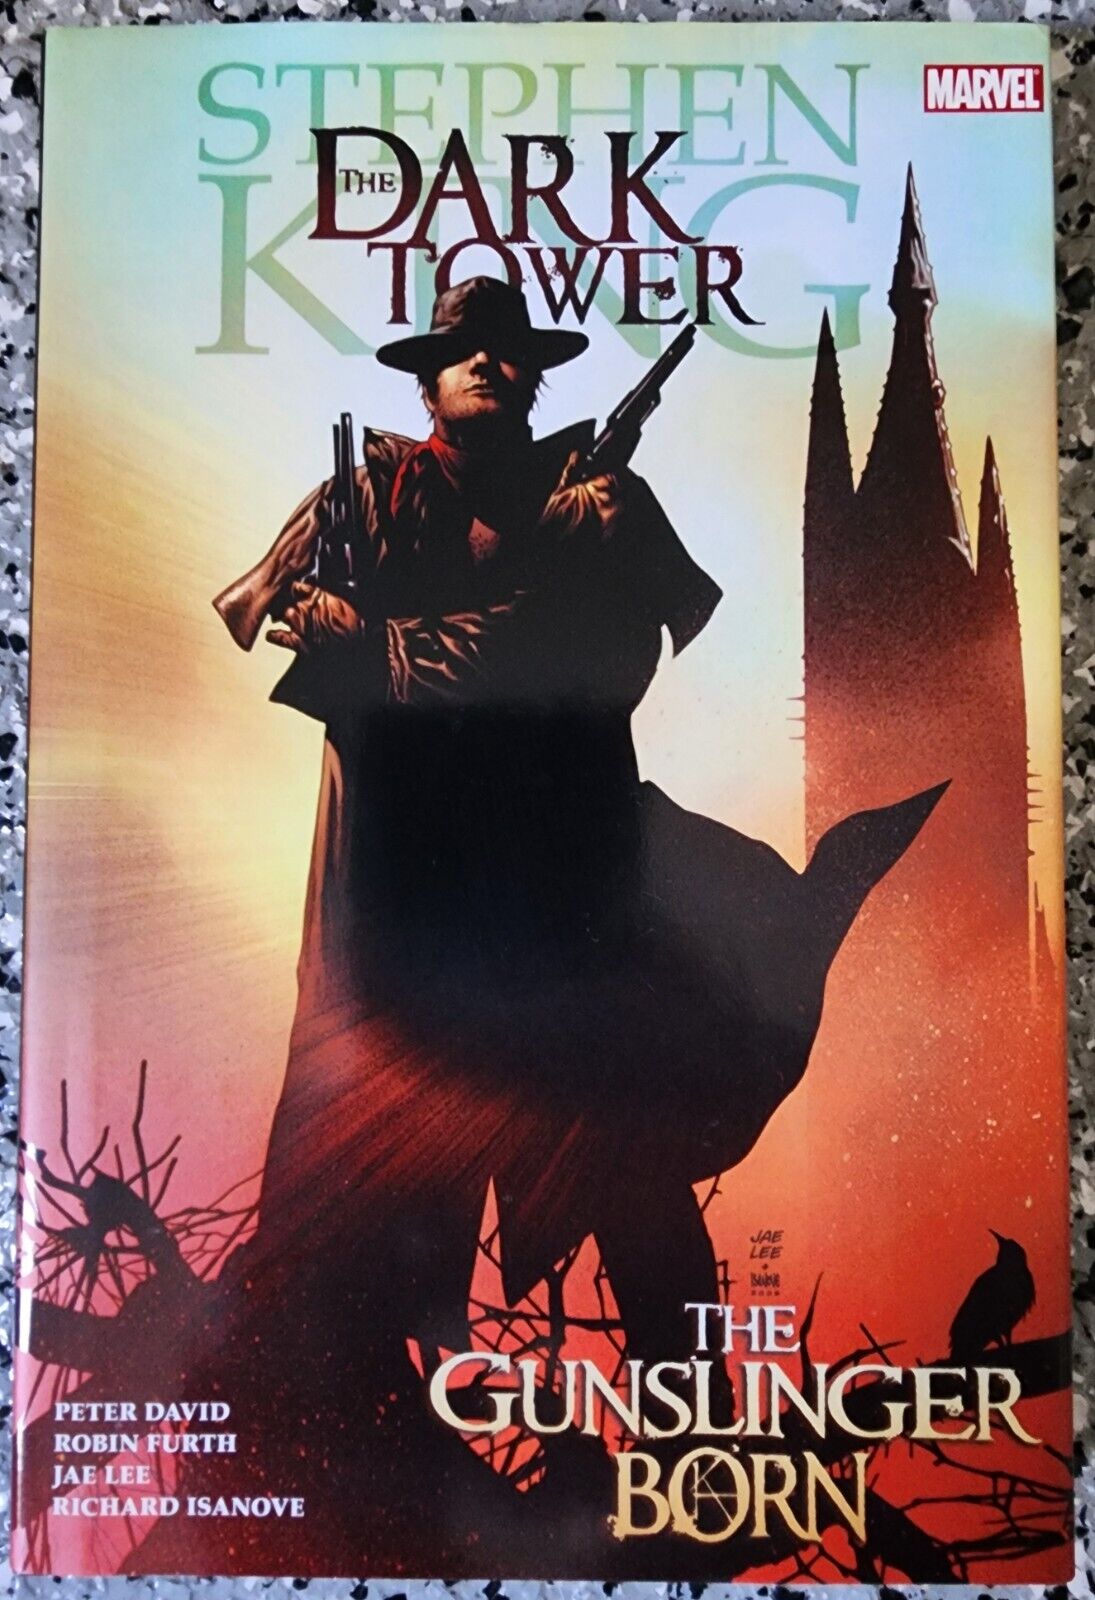 Stephen King The Dark Tower - Gunslinger Born - Marvel Hardcover  First Printing